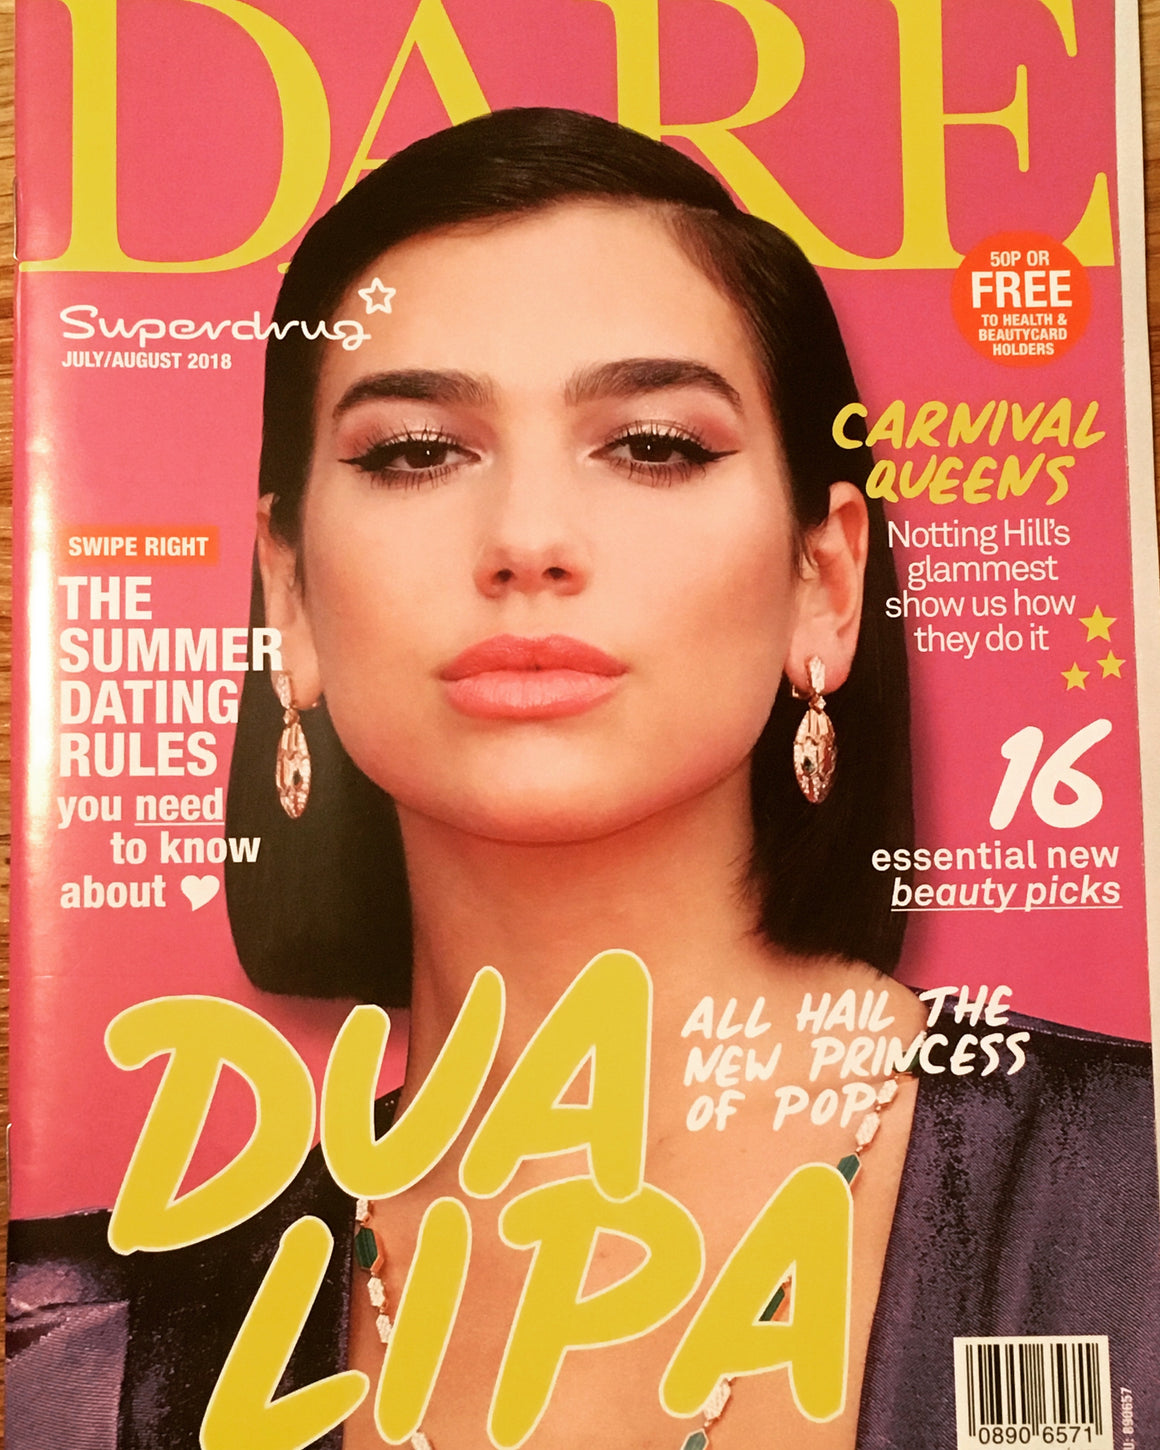 UK Dare Magazine July/August 2018: DUA LIPA COVER STORY